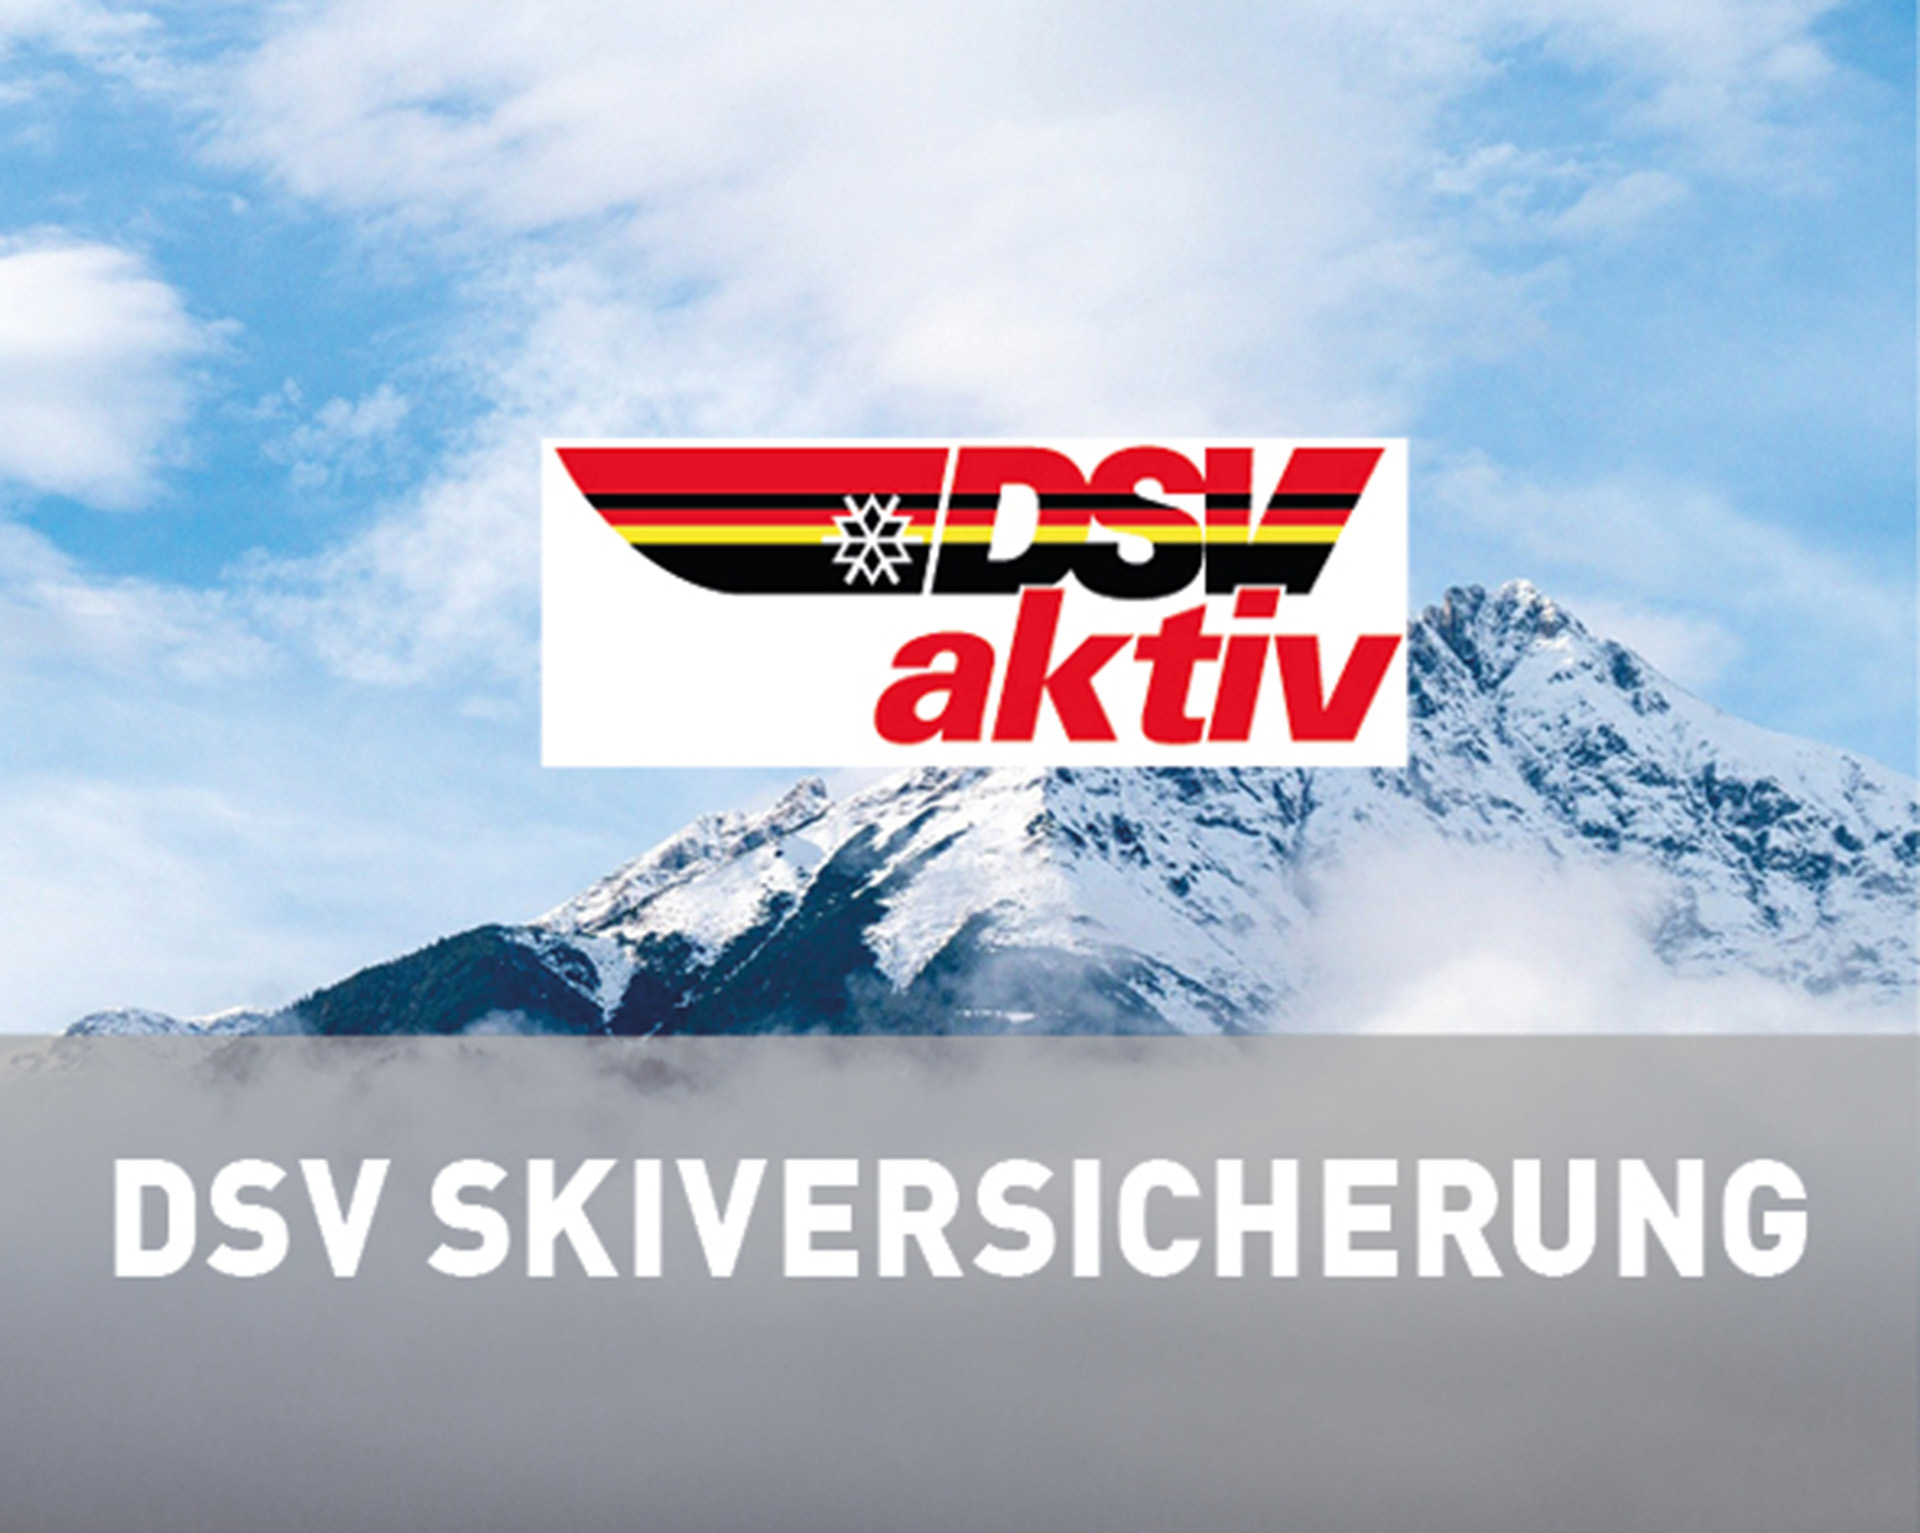 DSV Logo vor schneebedecktem Berg DSV Skiversicherung